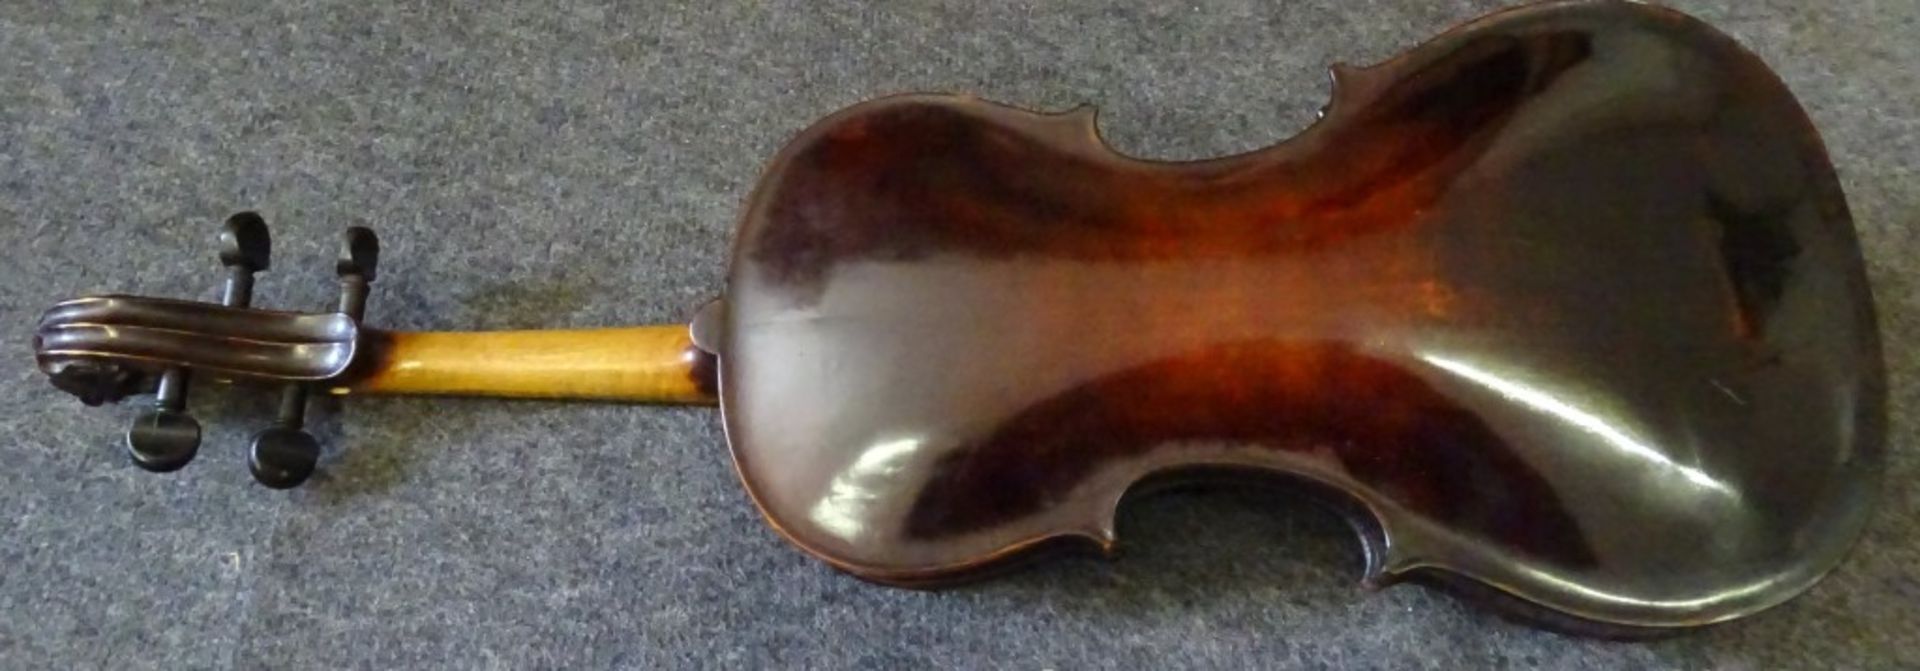 Geige- Hornsteiner Mittenwald 1882,Etikett in Geigen Korpus,sog.Löwenkopf Geige,anbei 2 Bögen,1x - Bild 6 aus 10